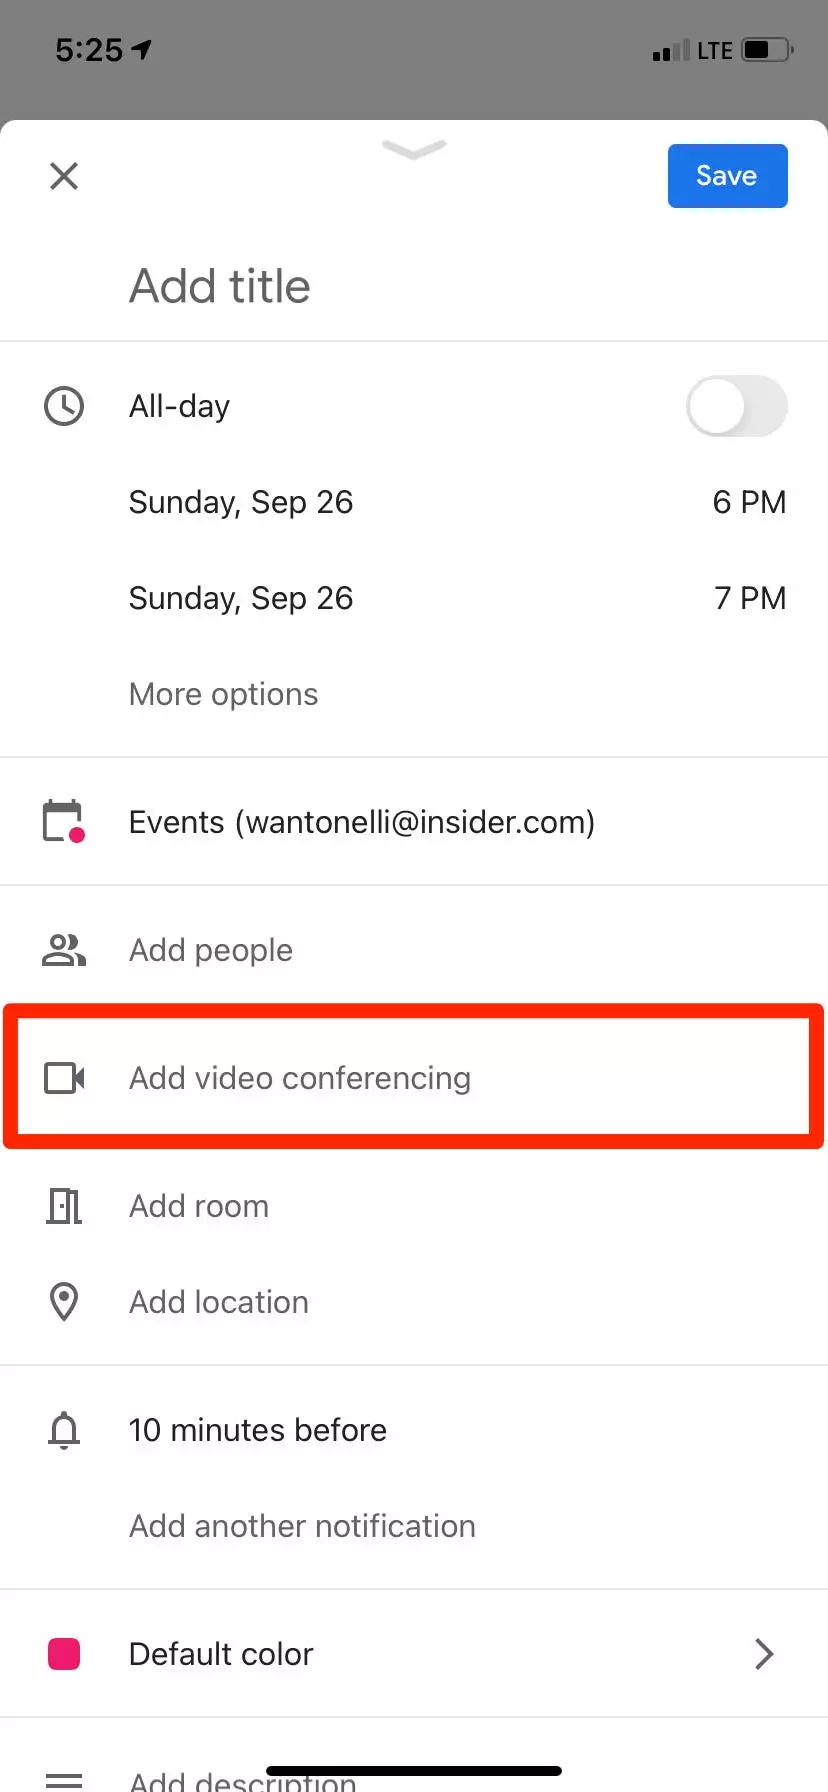 如何安排 Google Meet 约会或立即开始约会